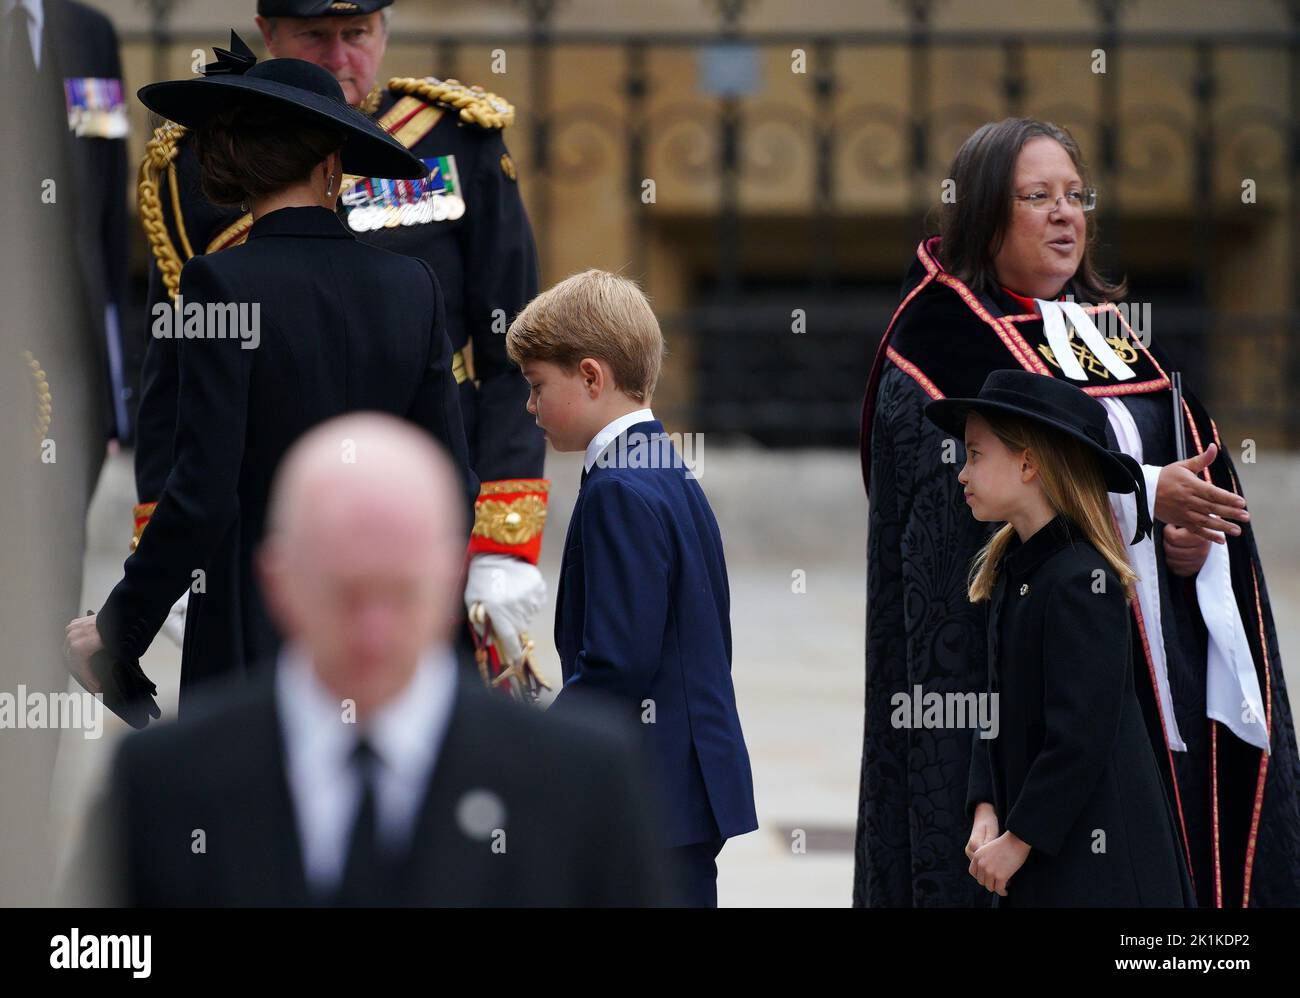 La princesse de Galles (à gauche), le Prince George (au centre) et la princesse Charlotte arrivent au funéraire d'État de la reine Elizabeth II, qui s'est tenu à l'abbaye de Westminster, à Londres. Date de la photo: Lundi 19 septembre 2022. Banque D'Images